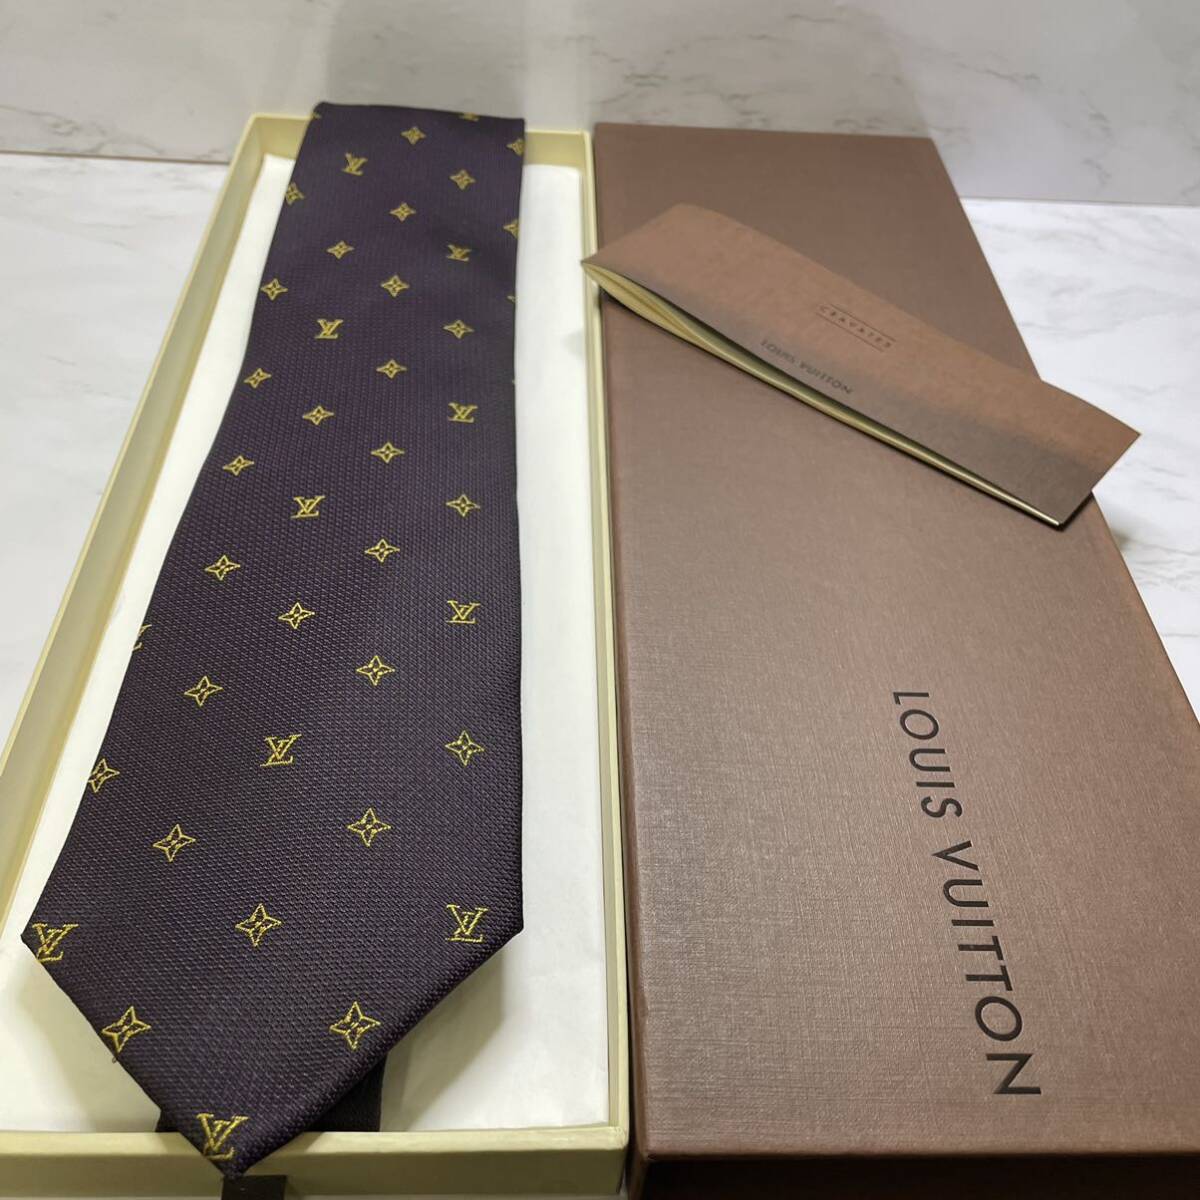  превосходный товар LOUIS VUITTON галстук близко год модели монограмма LVro экстремально lavato бизнес праздничные обряды Smart 